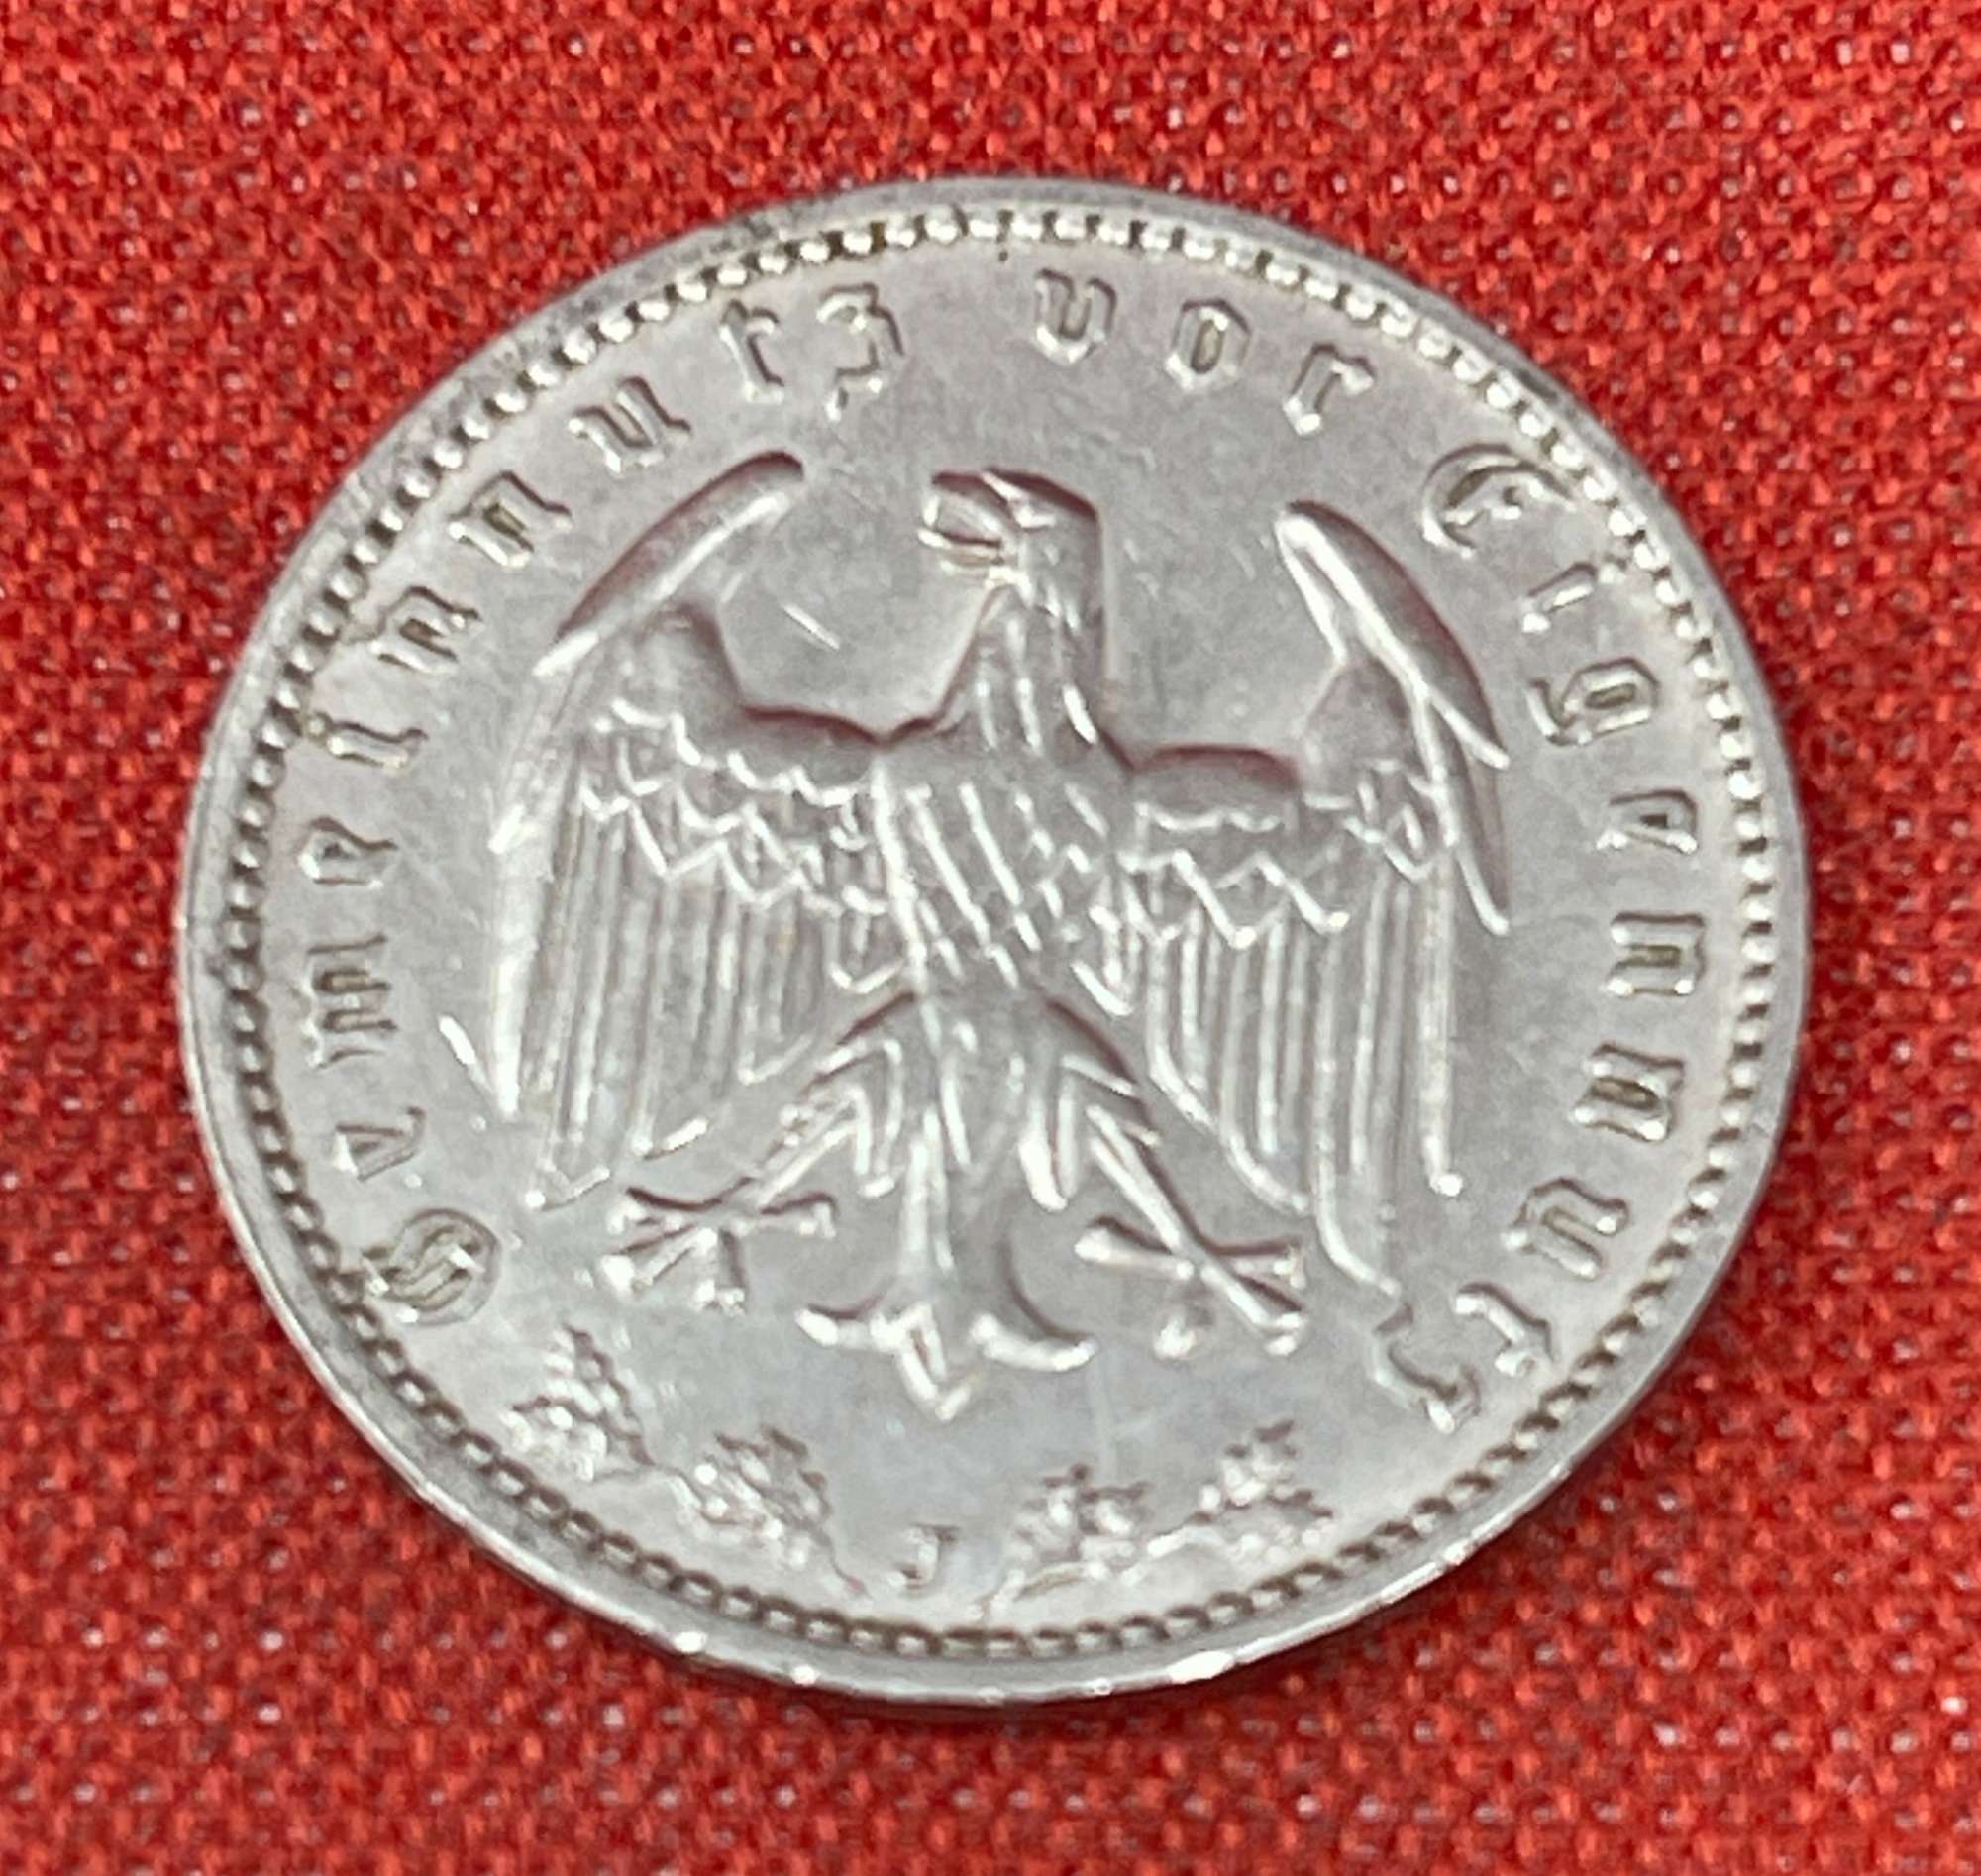 Germany - Deutsches Reich 1 Reichsmark, 1933-1939